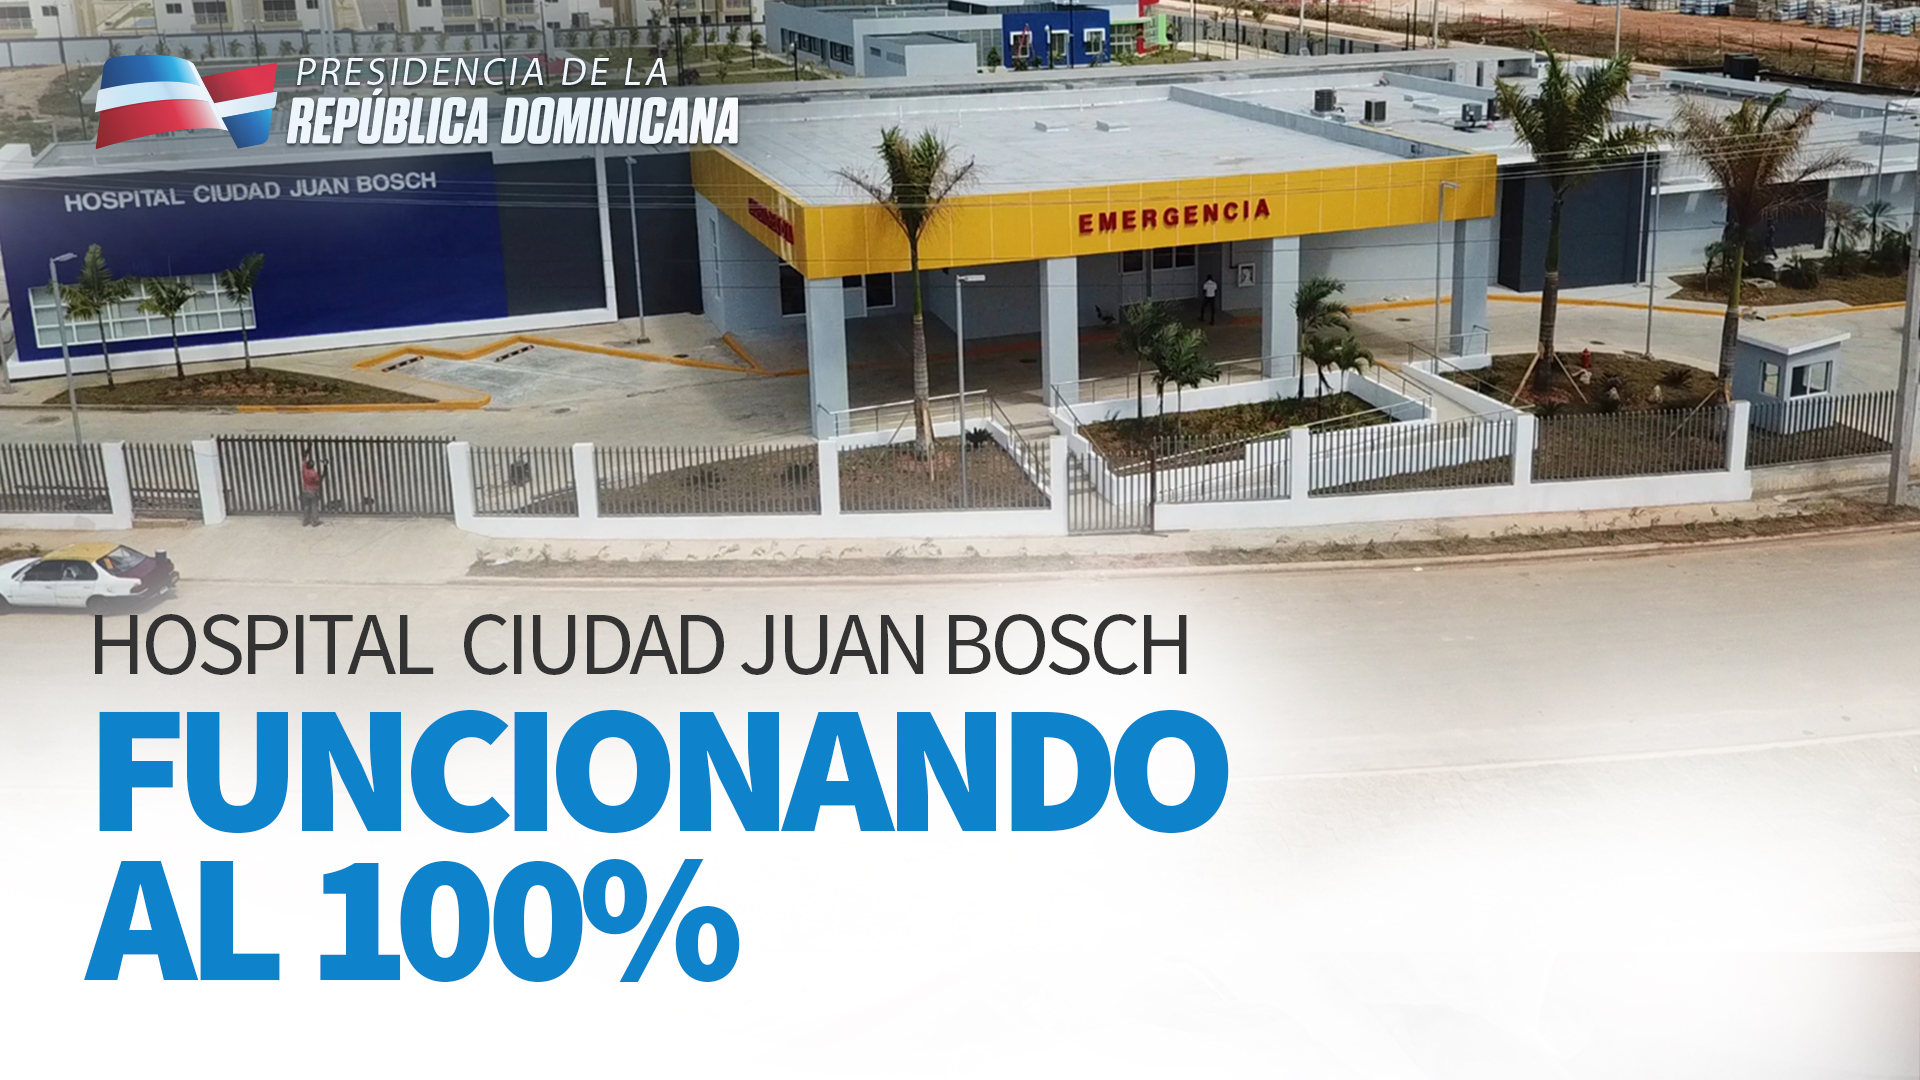 REPÚBLICA DOMINICANA: Hospital Ciudad Juan Bosch funcionando al 100%